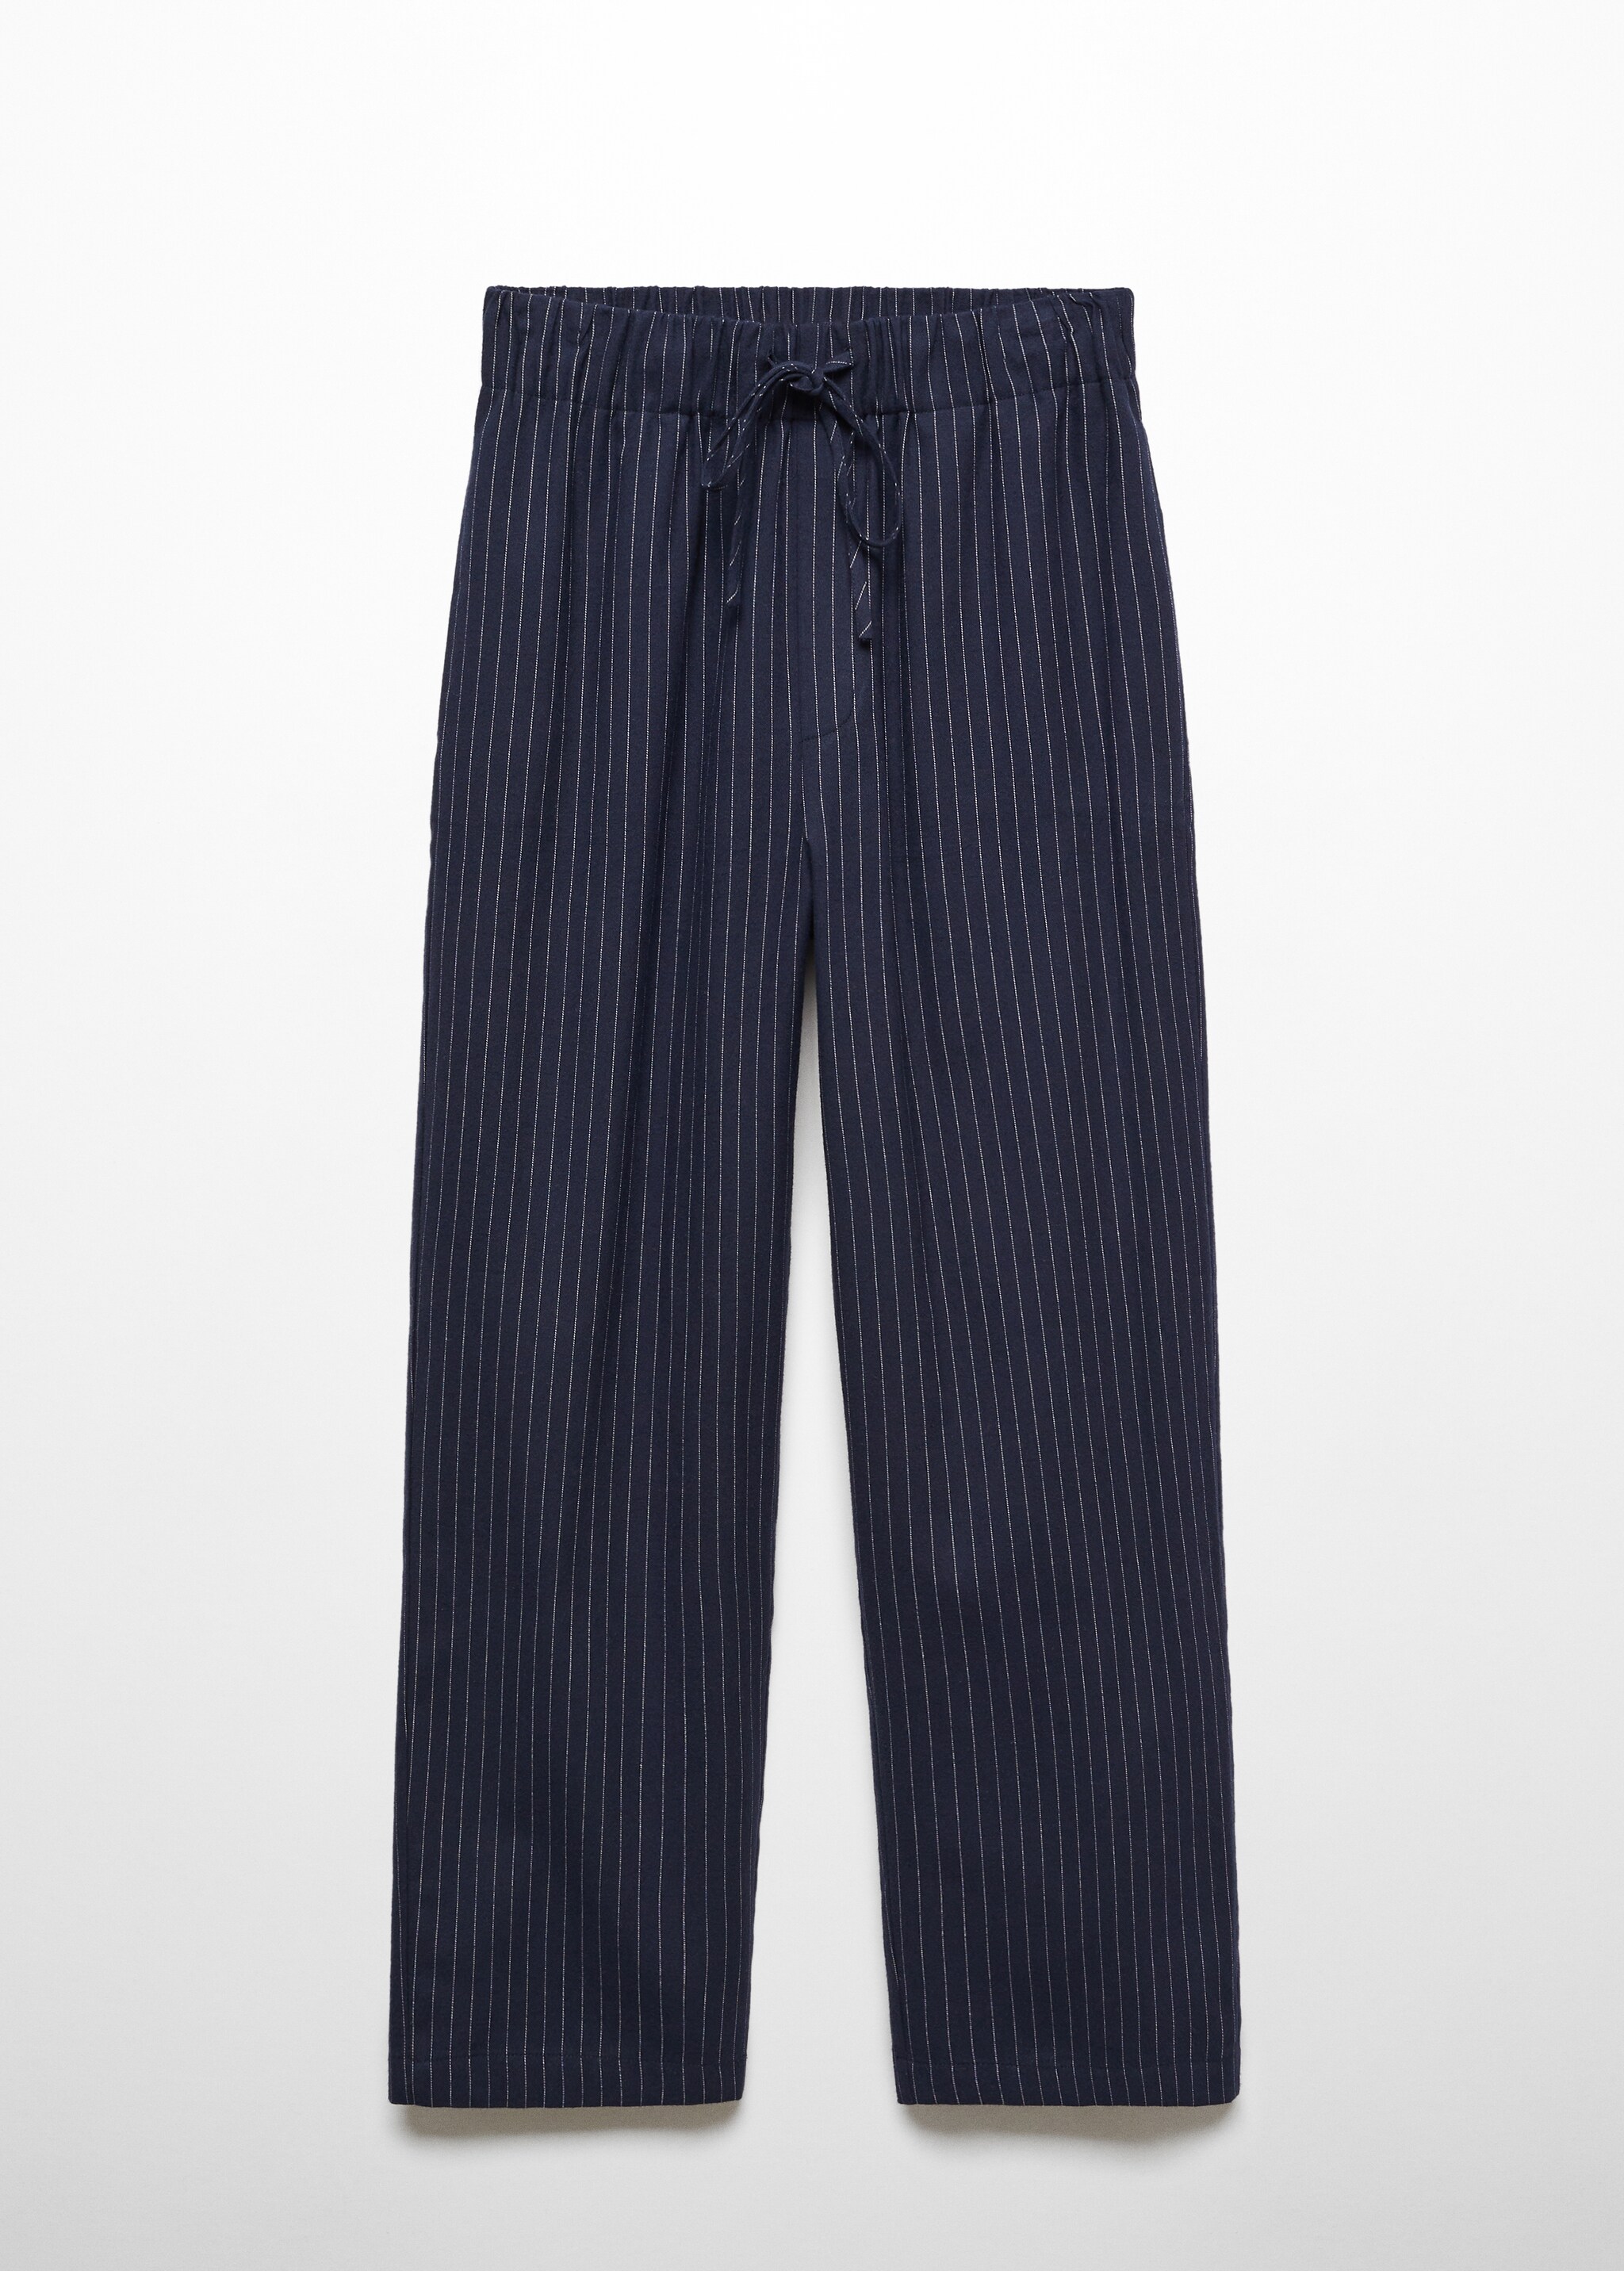 Pantalón pijama rayas - Artículo sin modelo